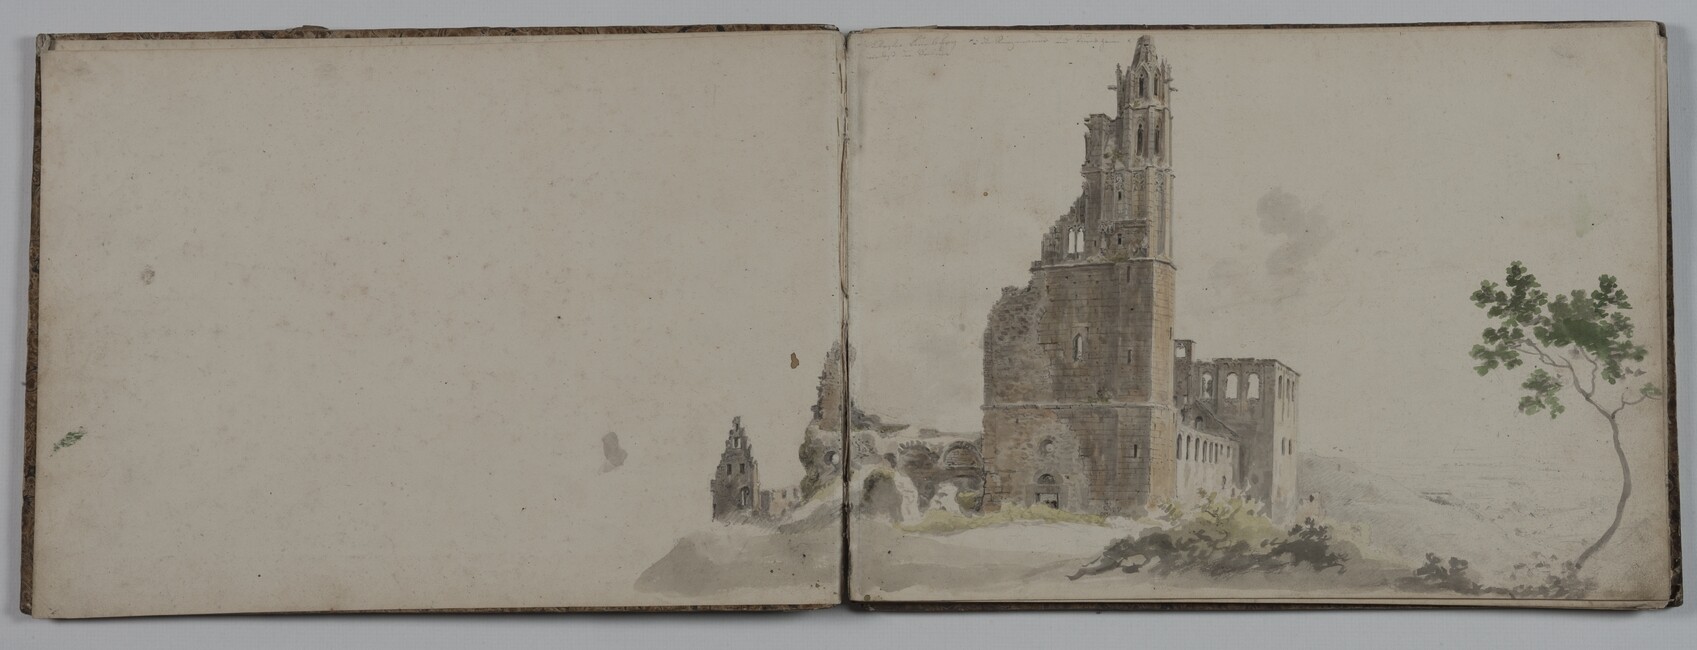 Die Limburg bei Bad Dürkheim - Skizzenbuch Blatt 2 (Doppelseite) (Historisches Museum der Pfalz, Speyer CC BY-NC-ND)